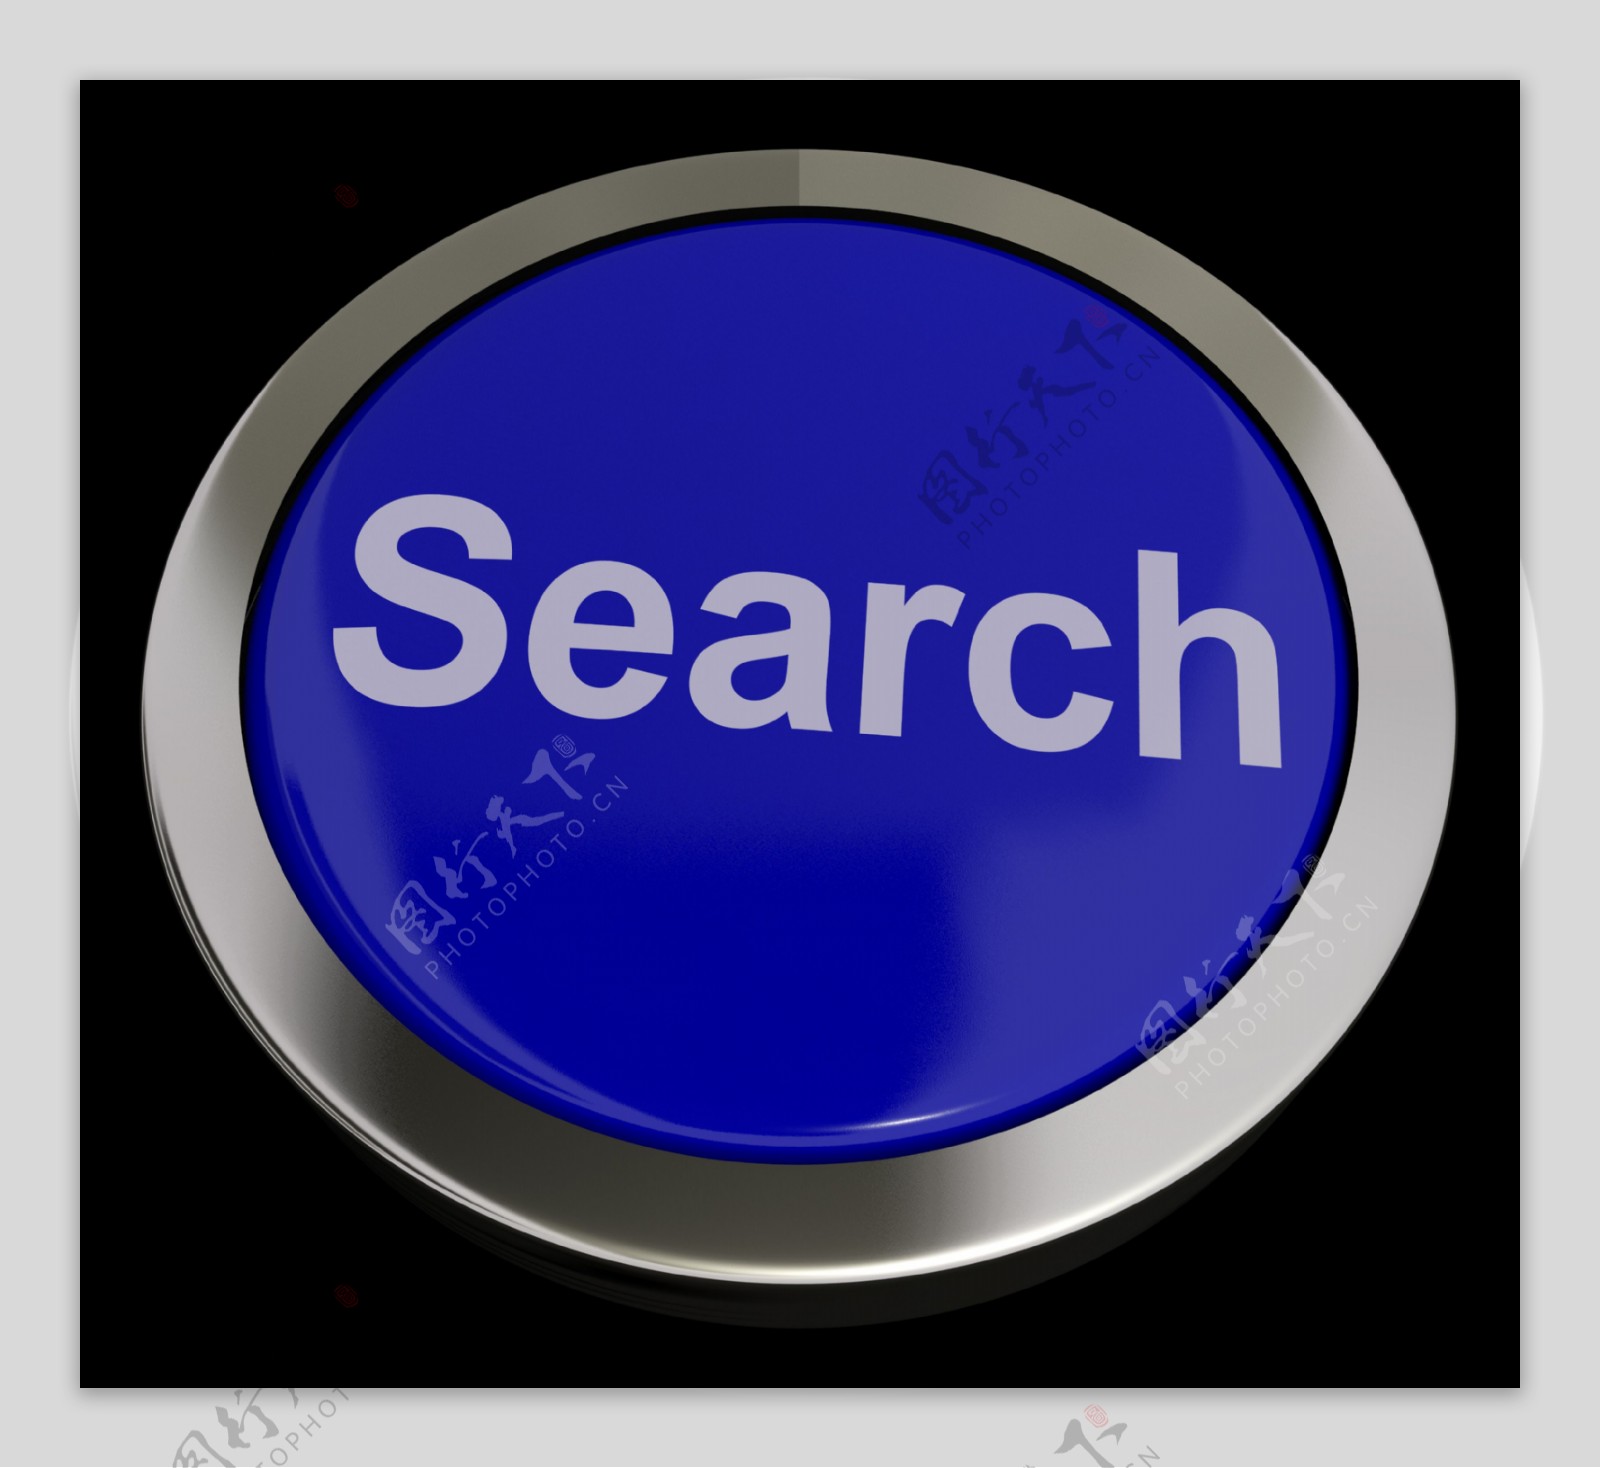 搜索按钮显示互联网接入和在线研究